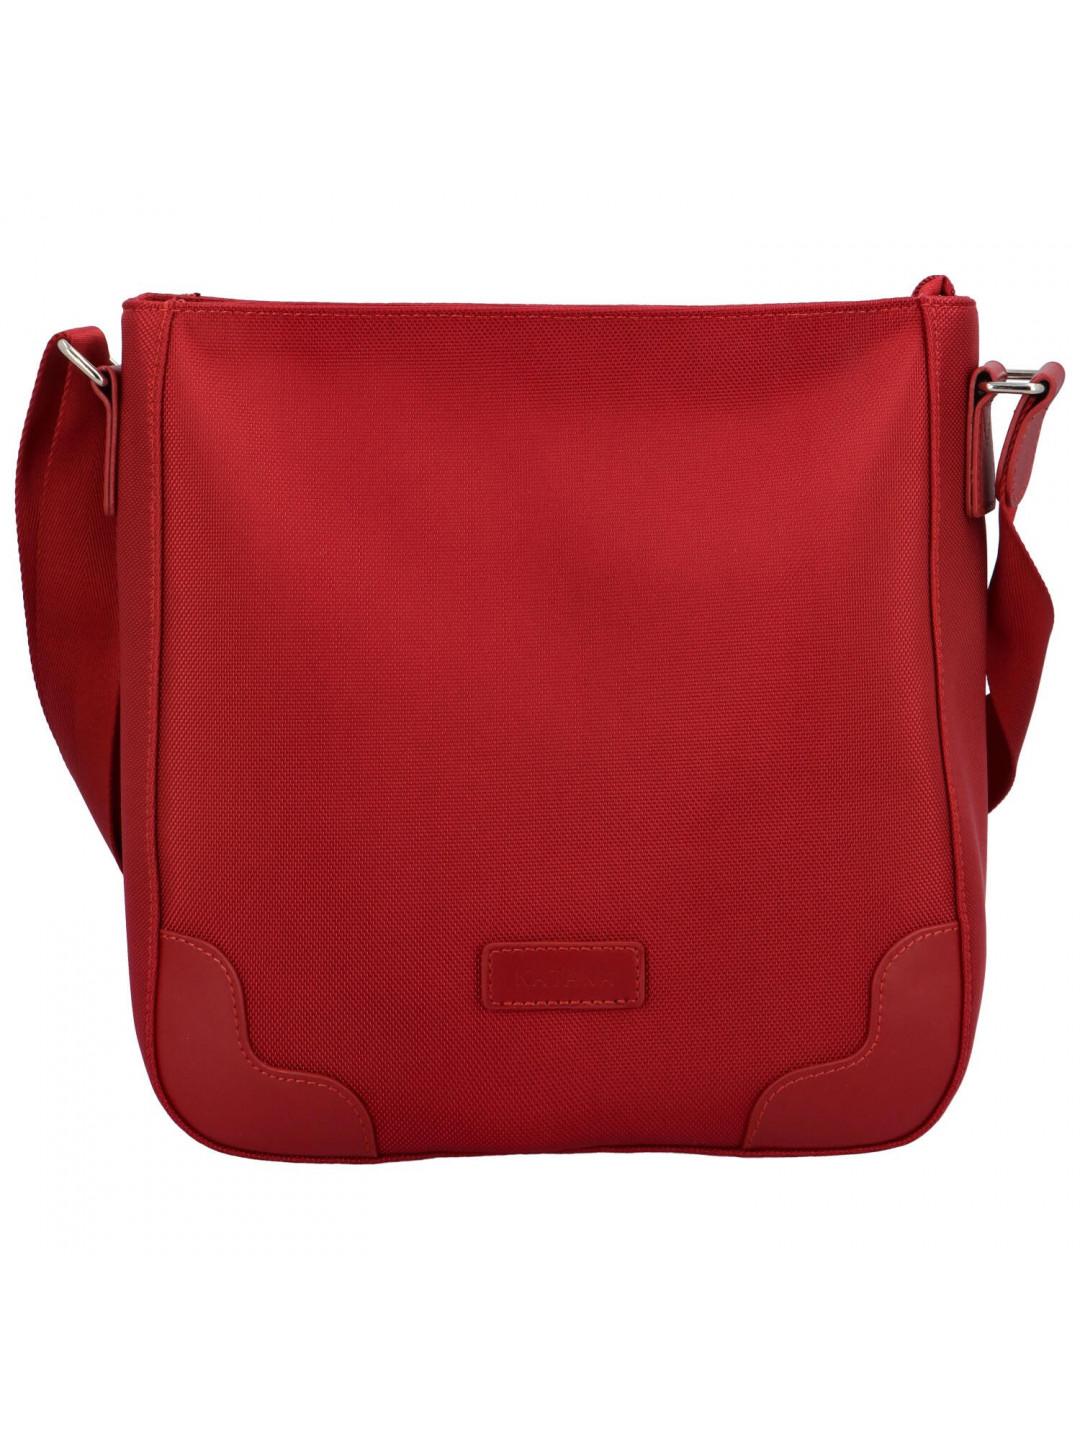 Dámská kabelka červená – Katana Brenis